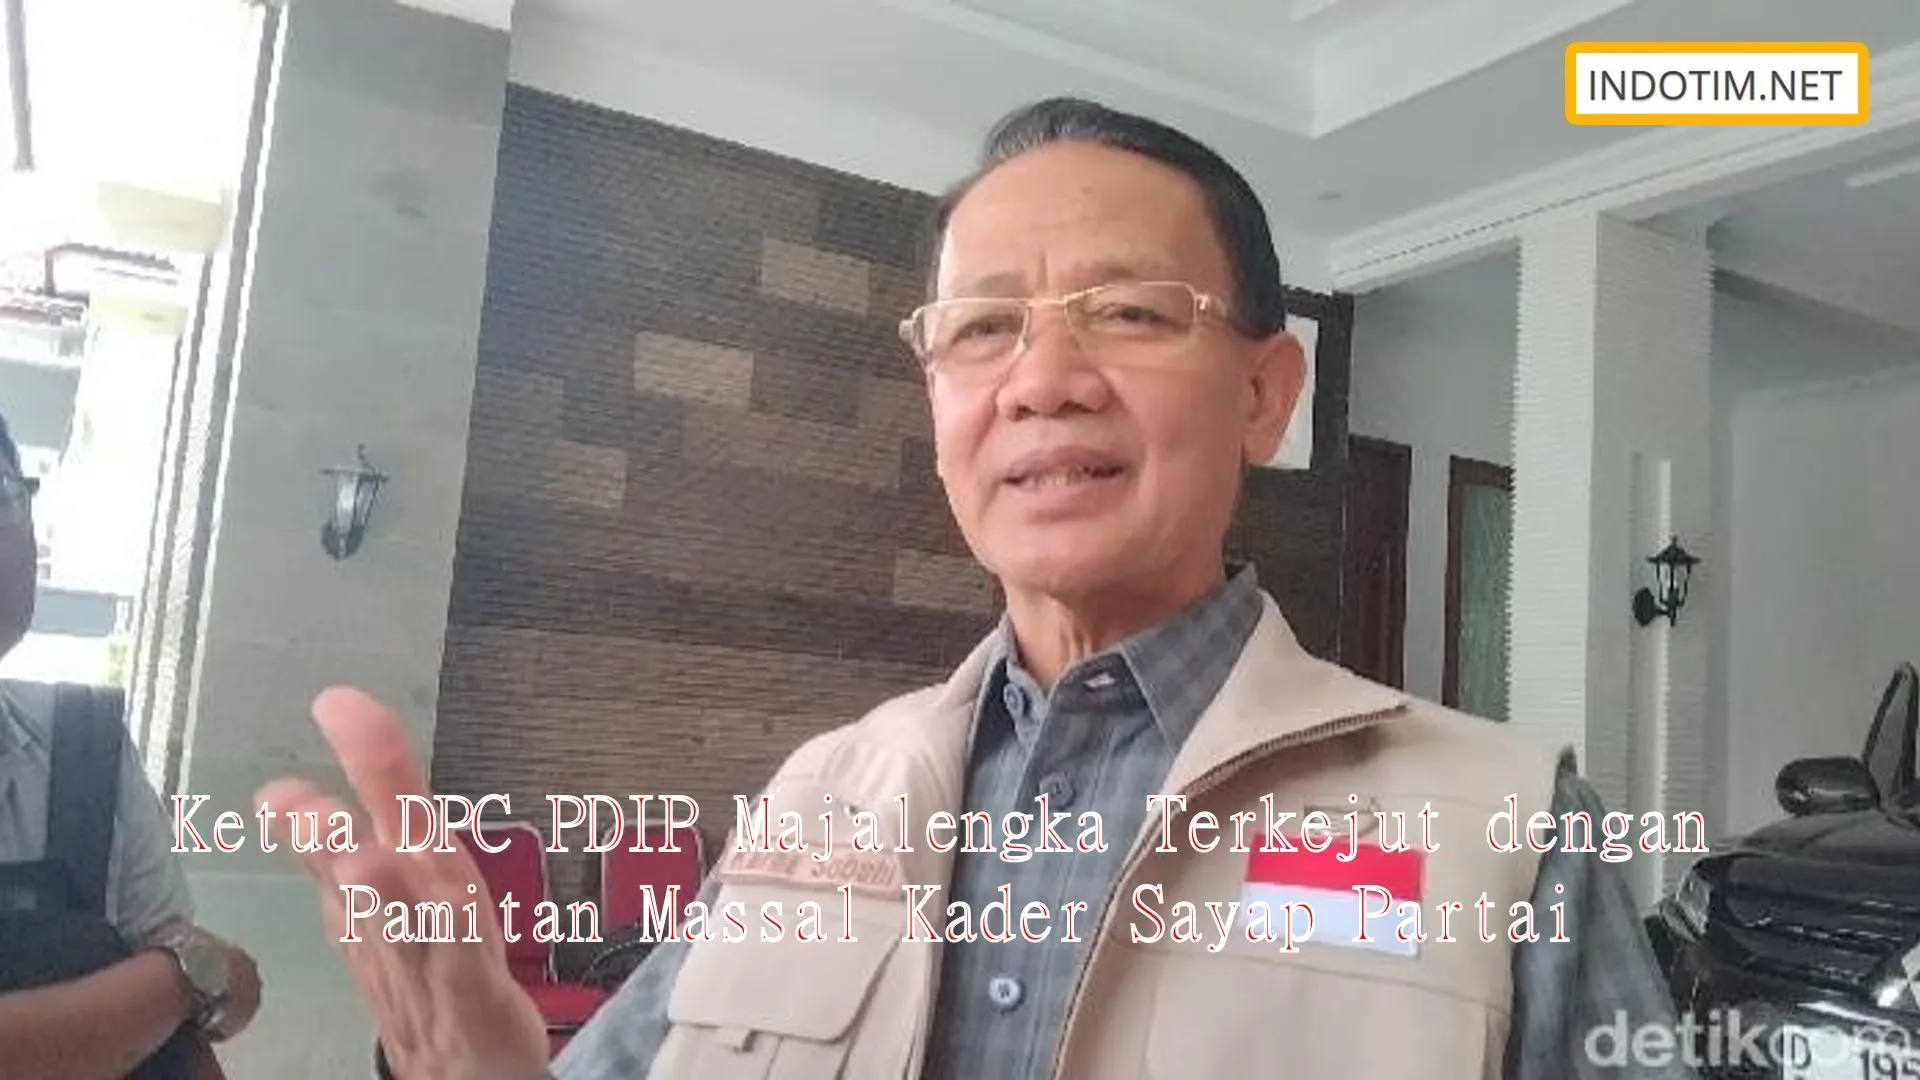 Ketua DPC PDIP Majalengka Terkejut dengan Pamitan Massal Kader Sayap Partai